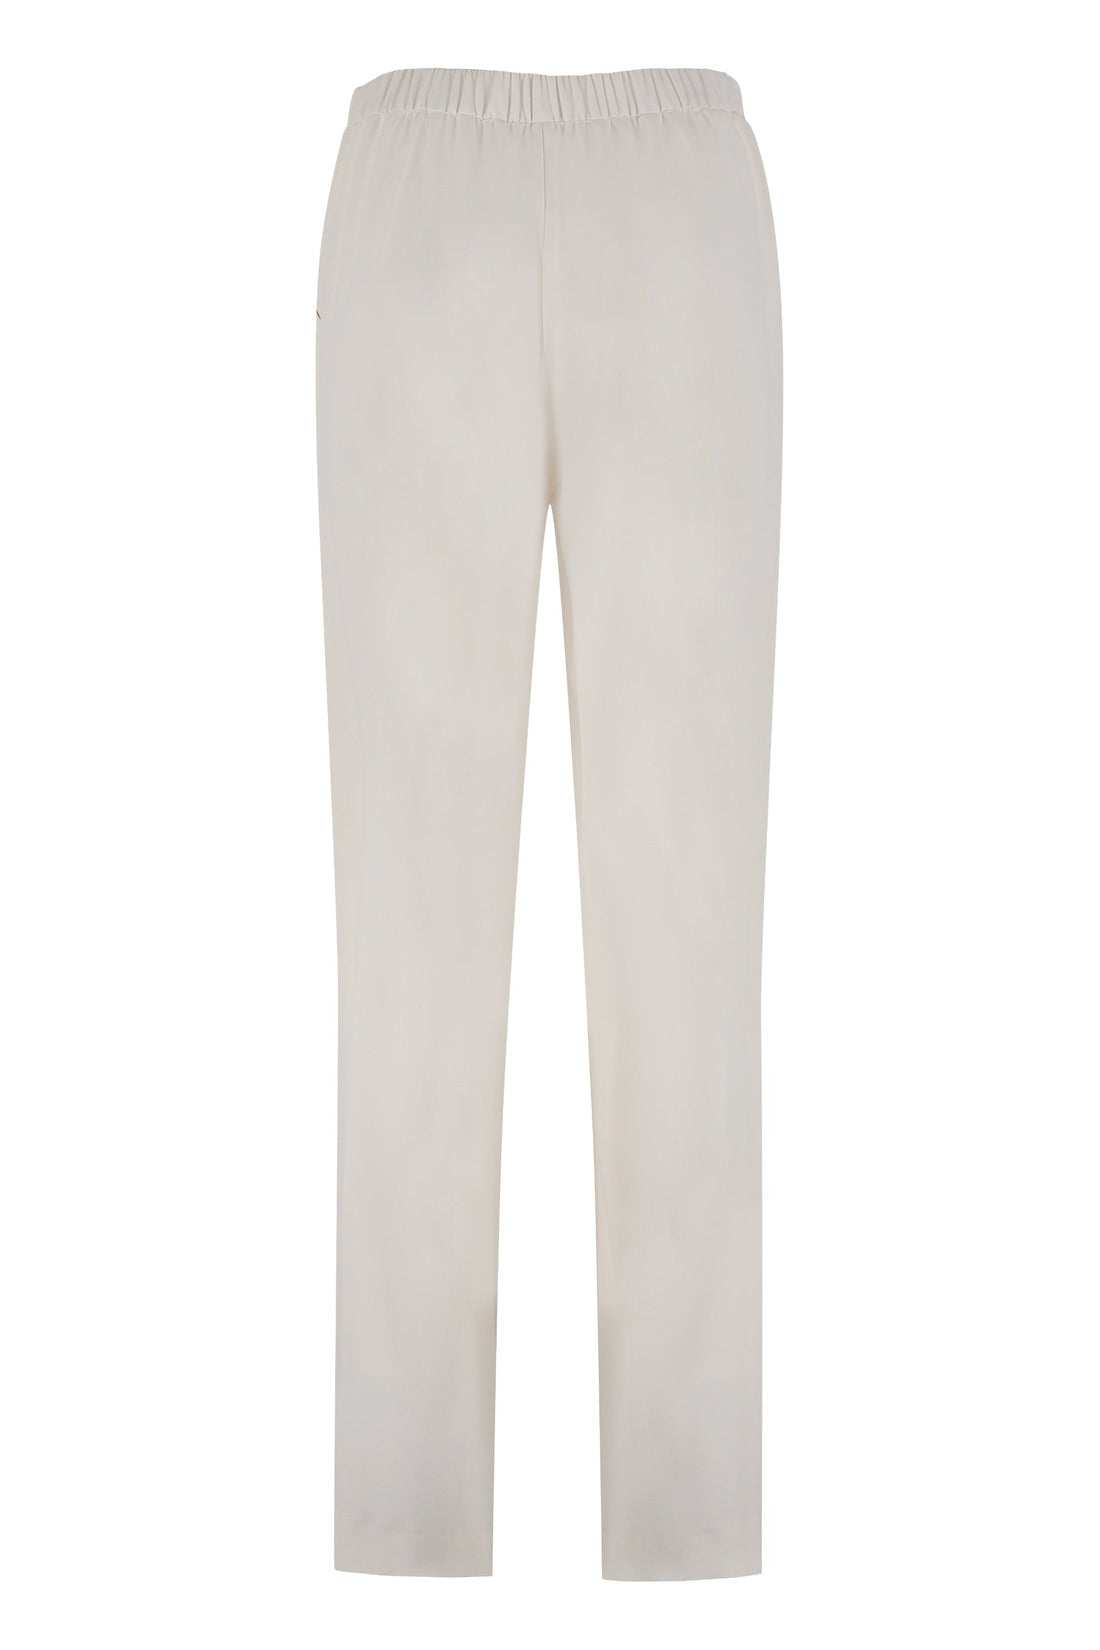 Parosh-OUTLET-SALE-Panty cady trousers-ARCHIVIST